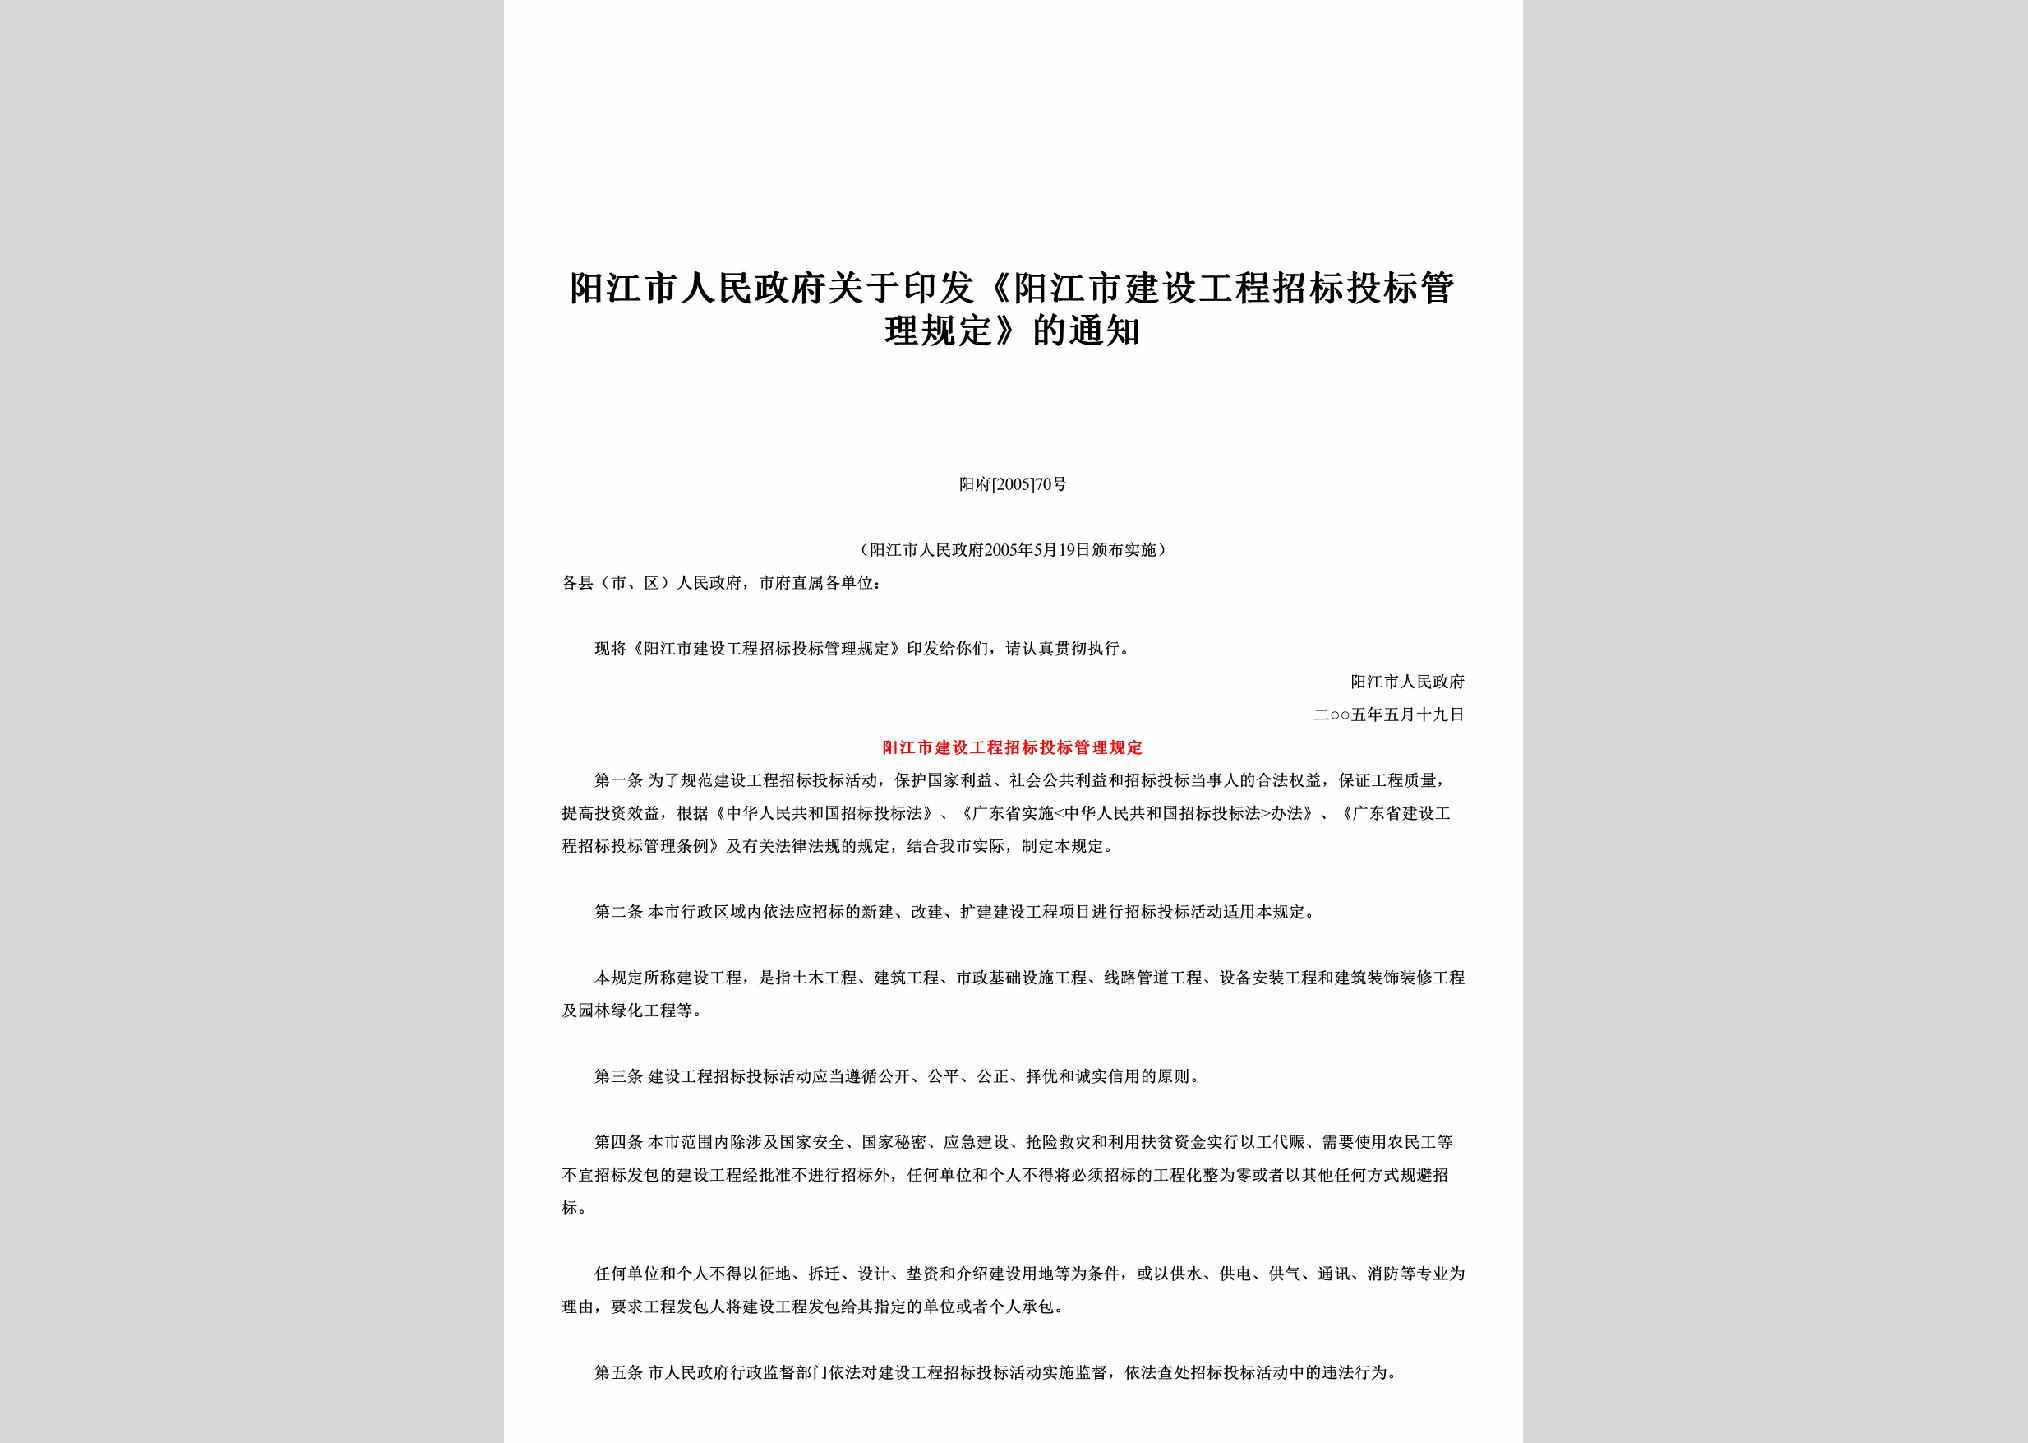 阳府[2005]70号：关于印发《阳江市建设工程招标投标管理规定》的通知